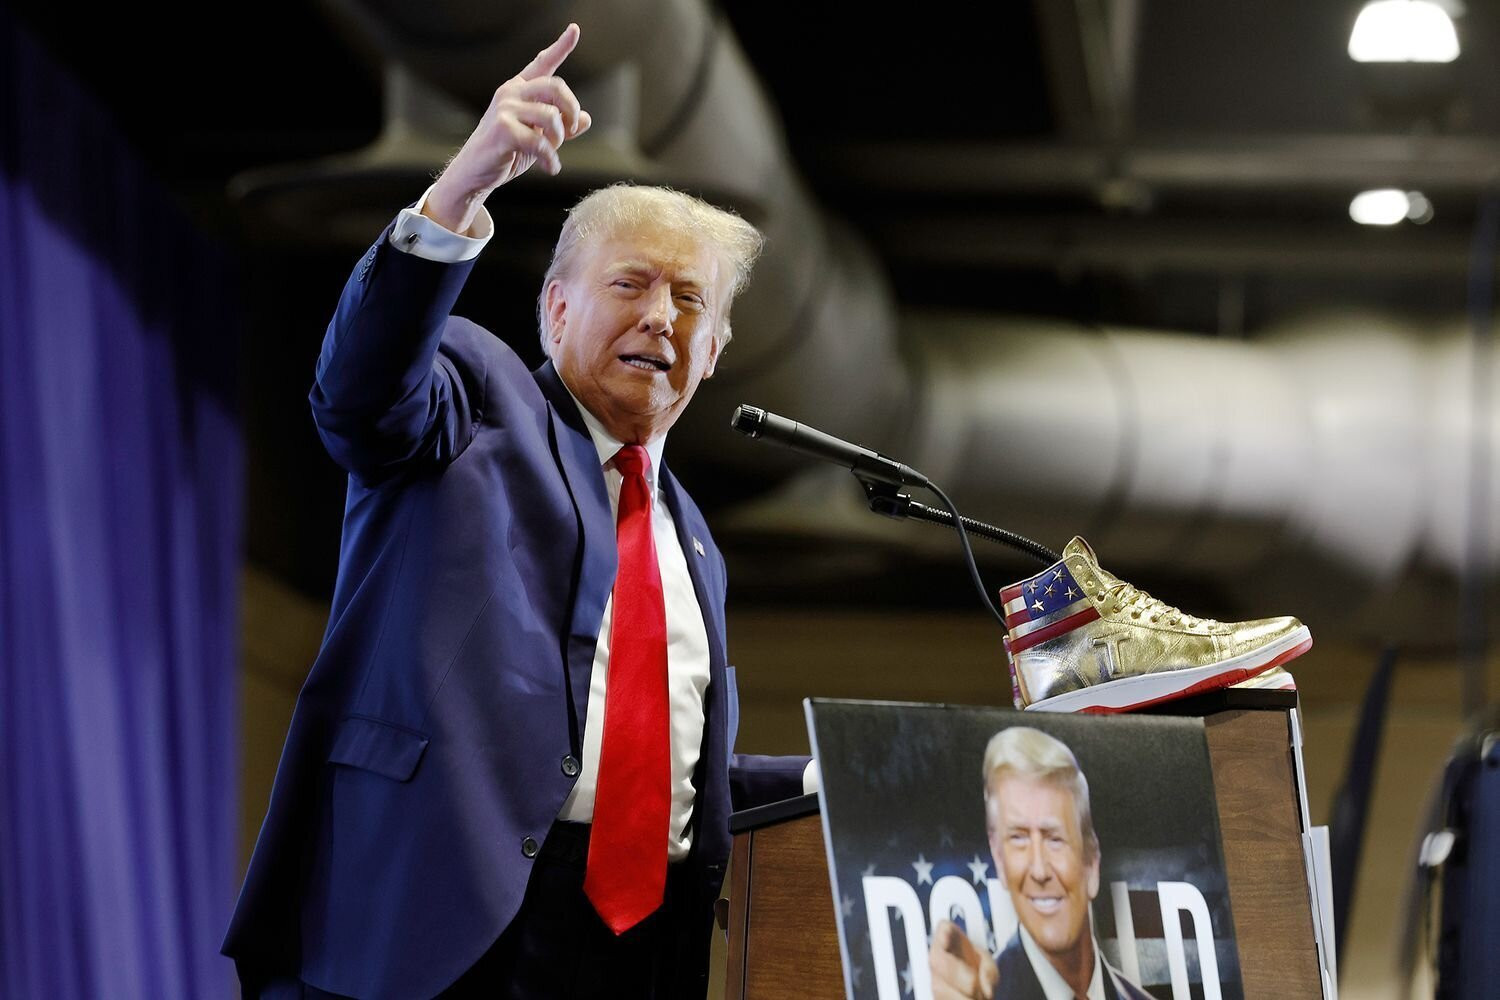 Cựu Tổng thống Mỹ Trump xuất hiện ở Philadelphia để quảng cáo giày thể thao mang nhãn hiệu Trump.